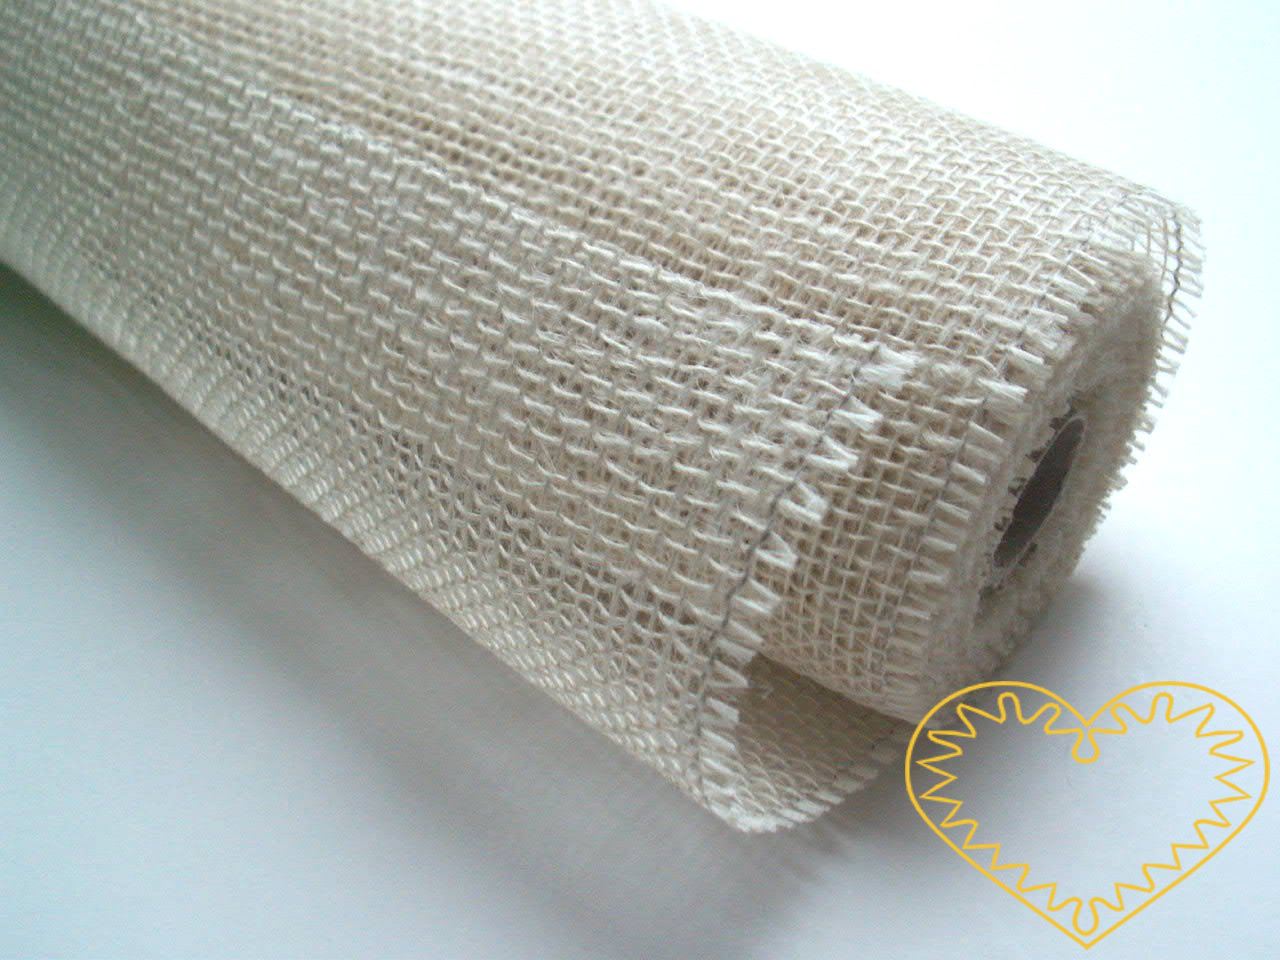 Juta - textilie z jutových vláken, role o šíři 0,5 m a délce 5 m. Vhodná pro aranžování, vytváření dekorací, bytových doplňků, popř. kostýmů.